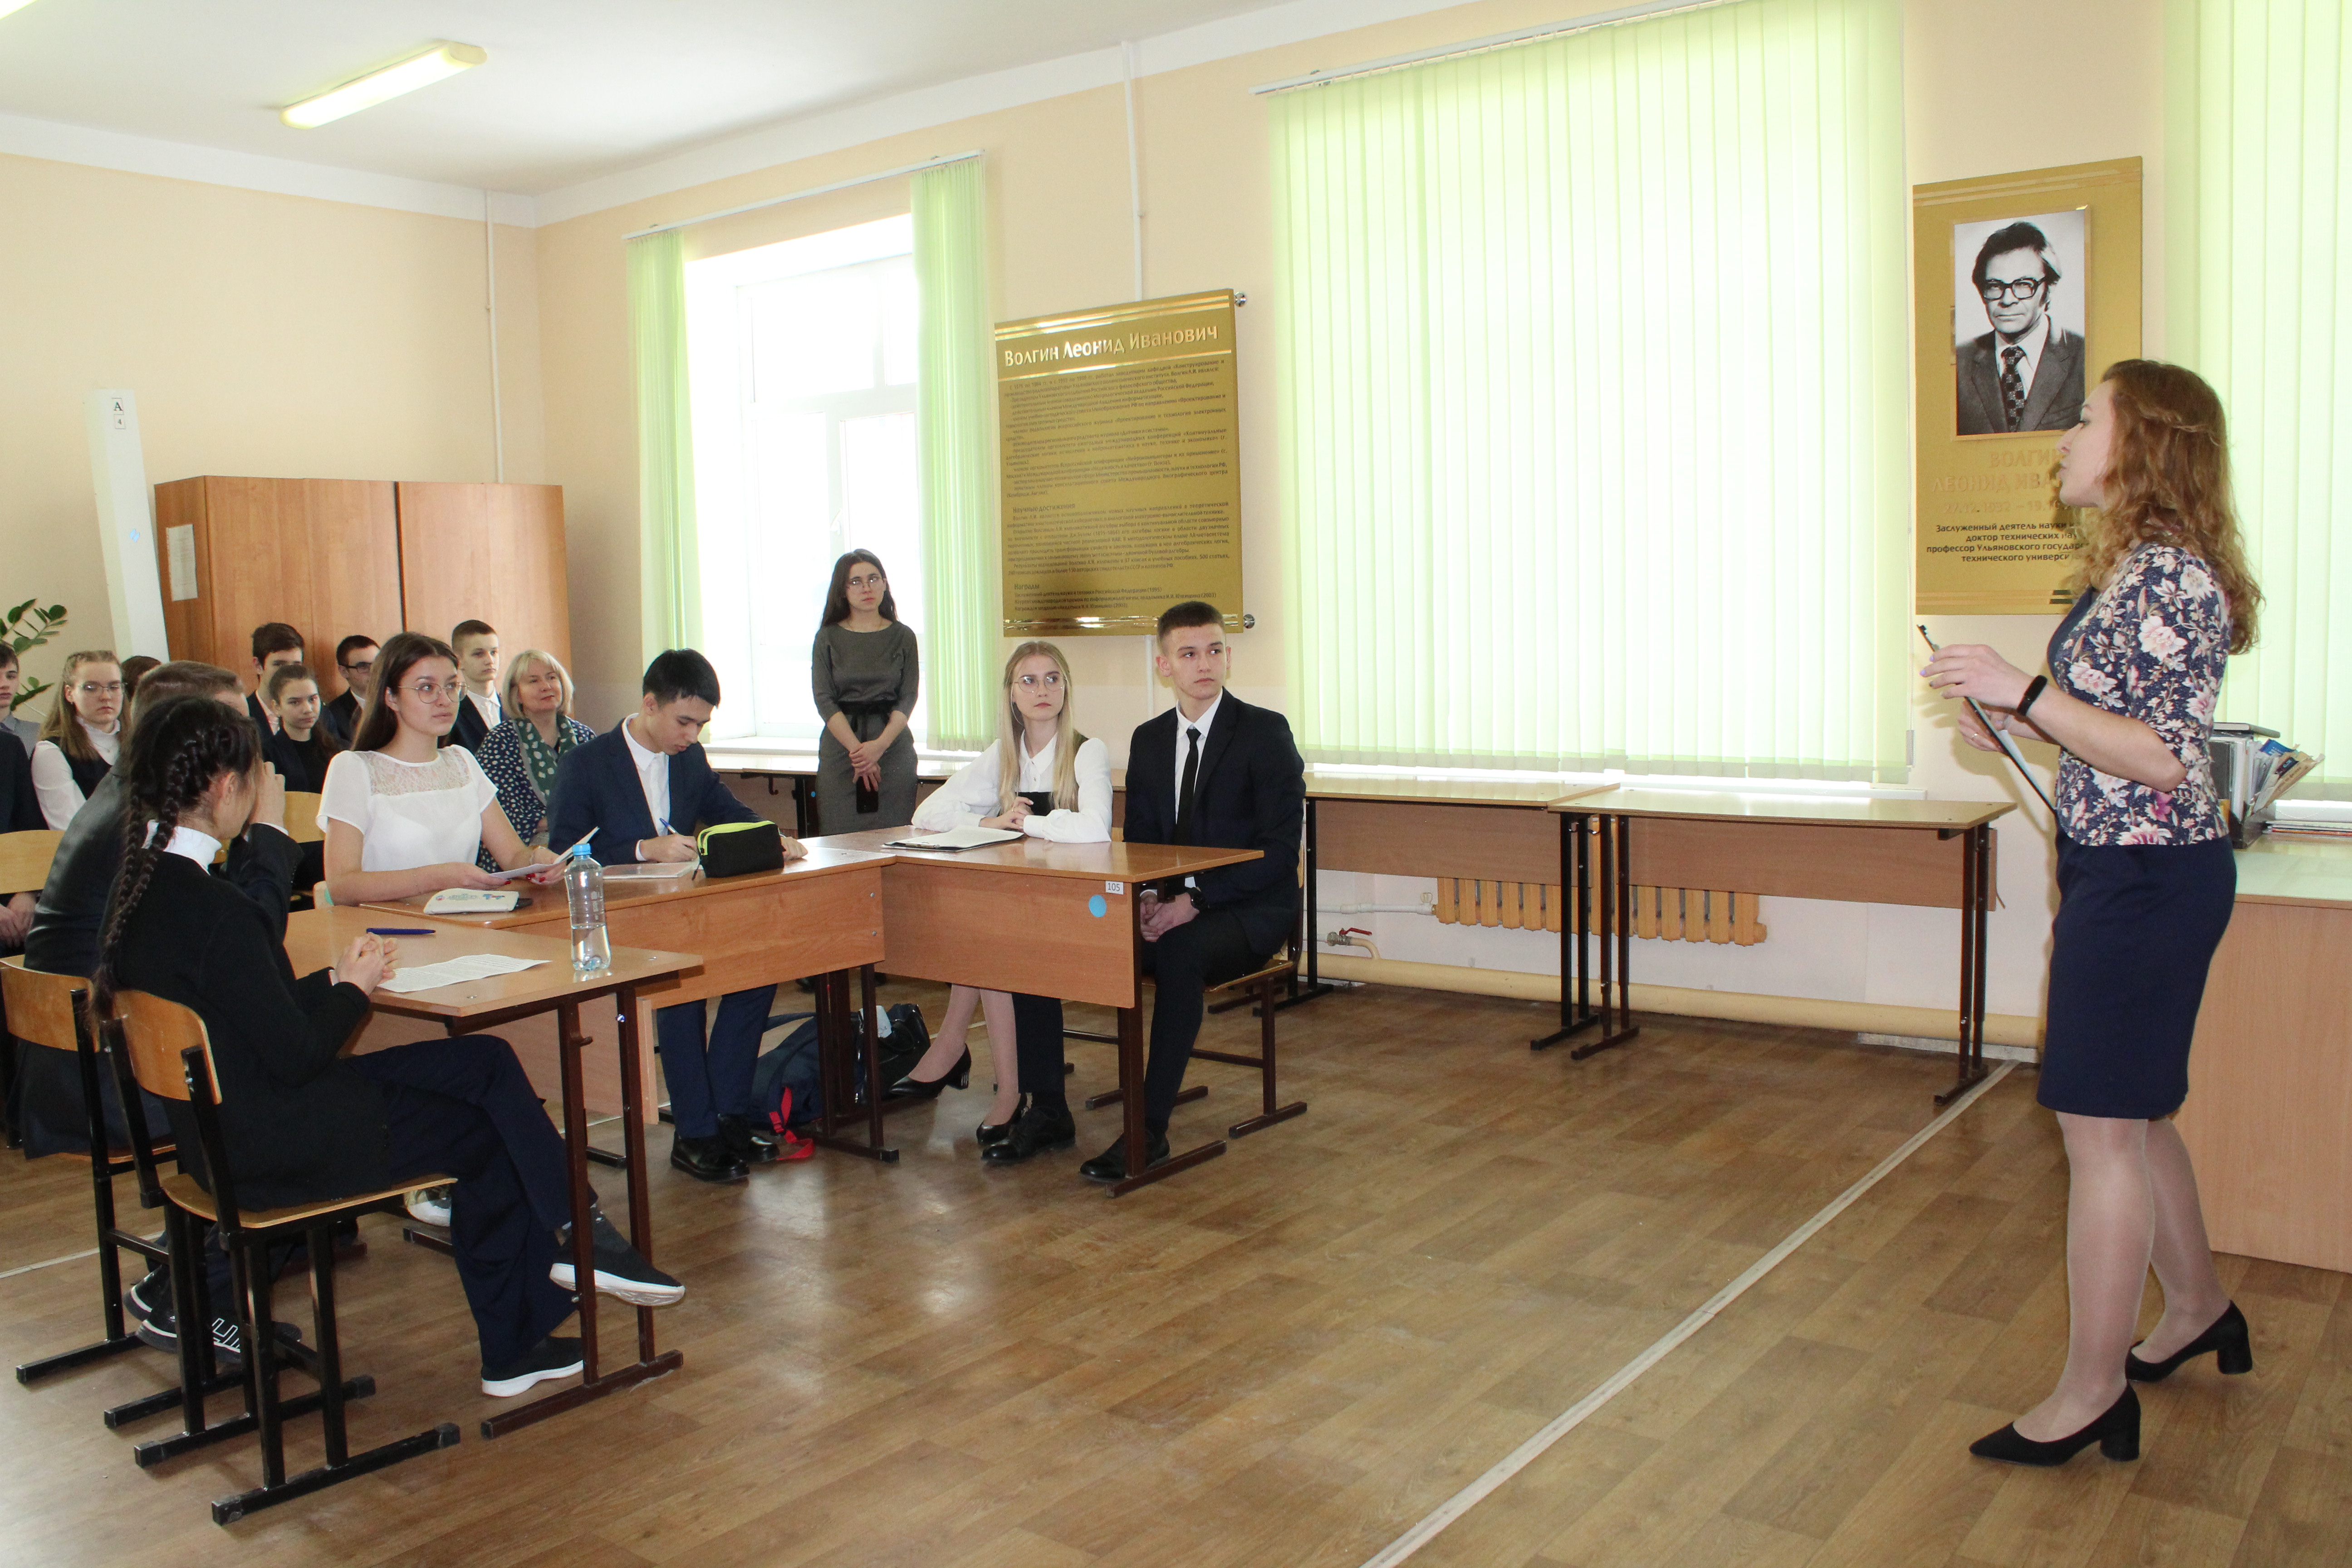 Ульяновские школьники активно участвуют в научной деятельности.